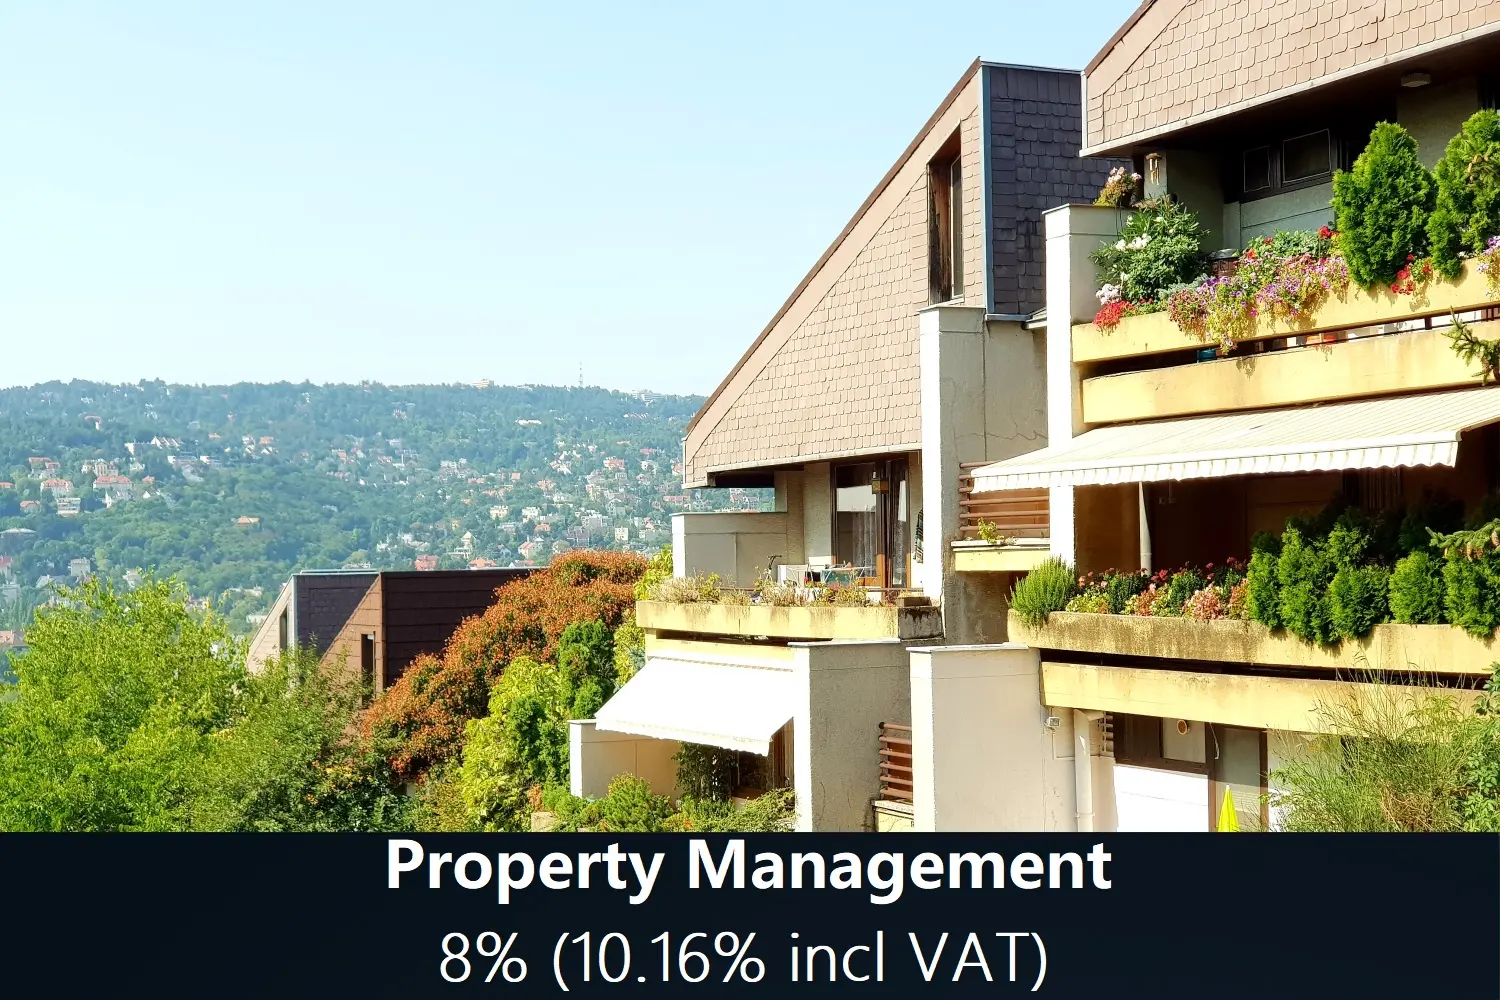 Property Management - 8% (10% incl VAT)